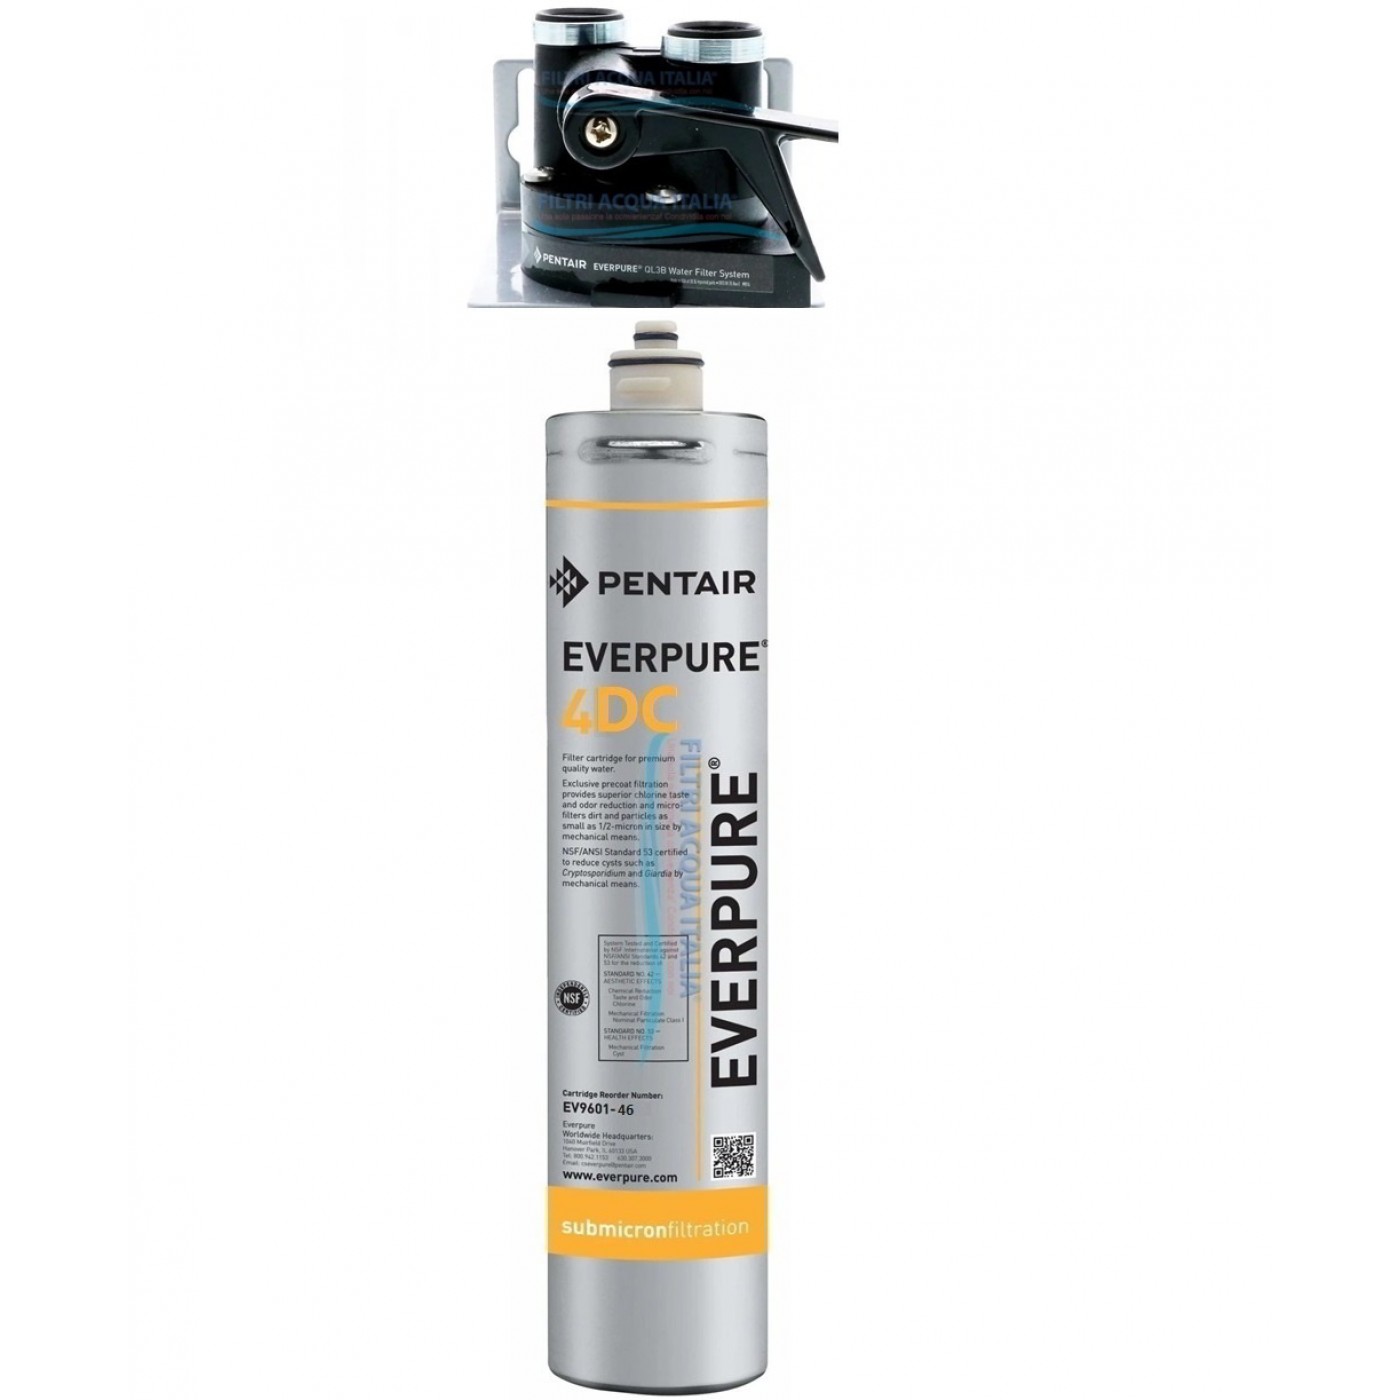 Everpure 4DC Kit con filtro everpure e testa QL3B